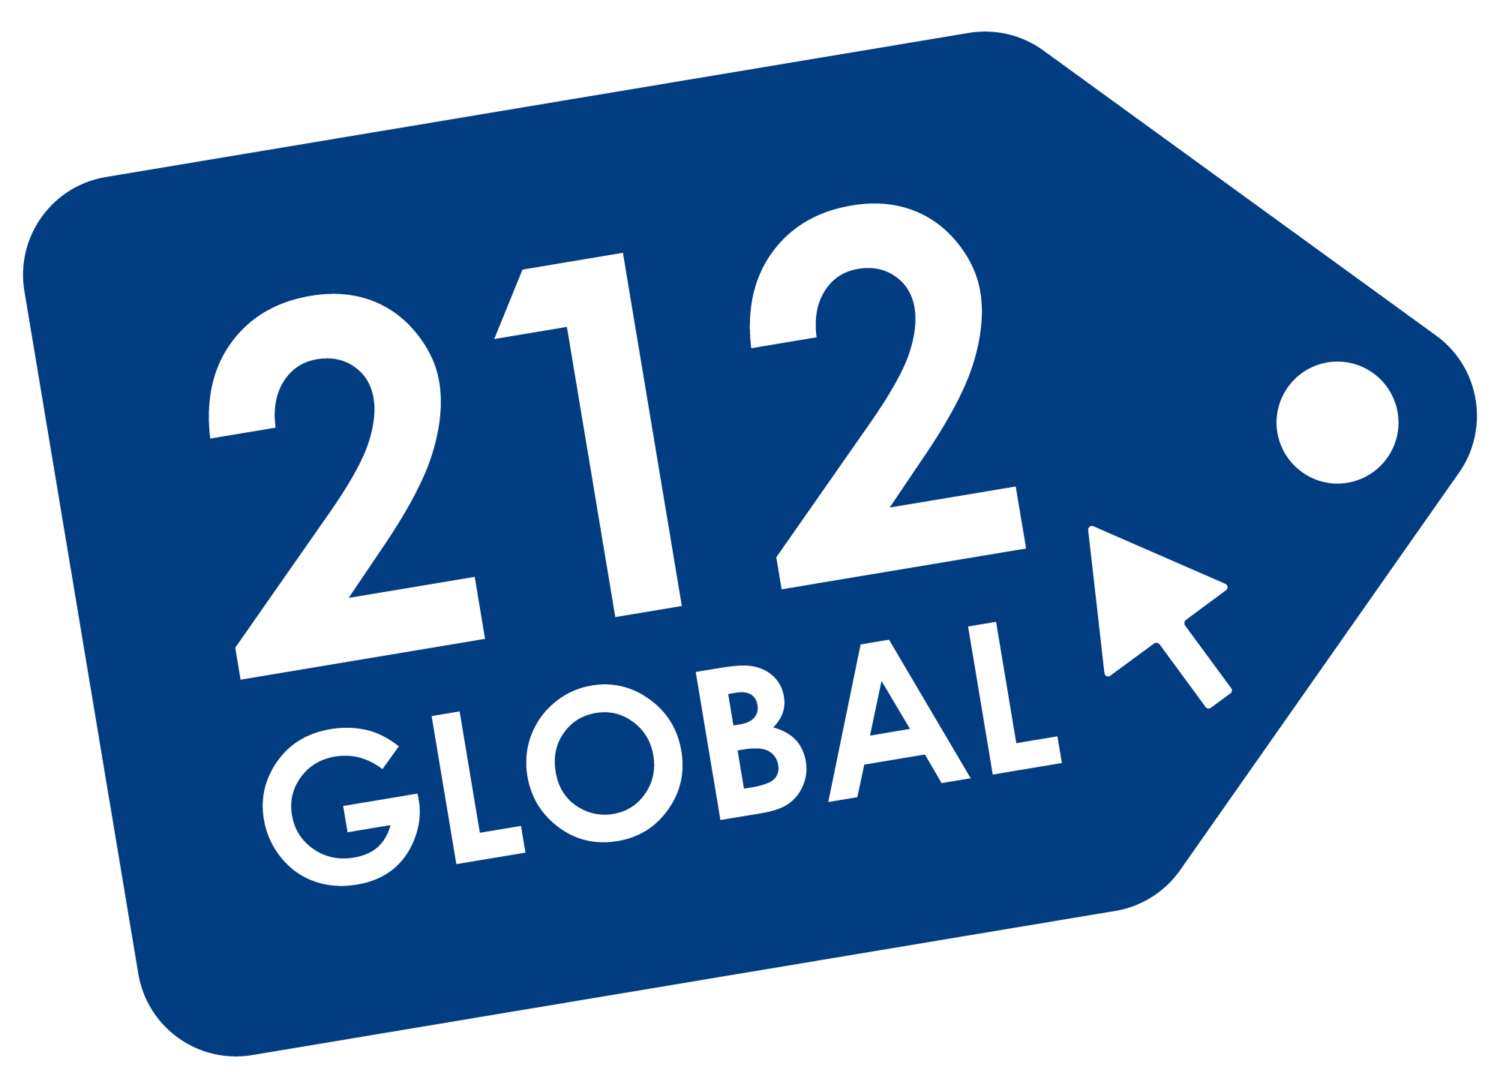 212 Global: Home